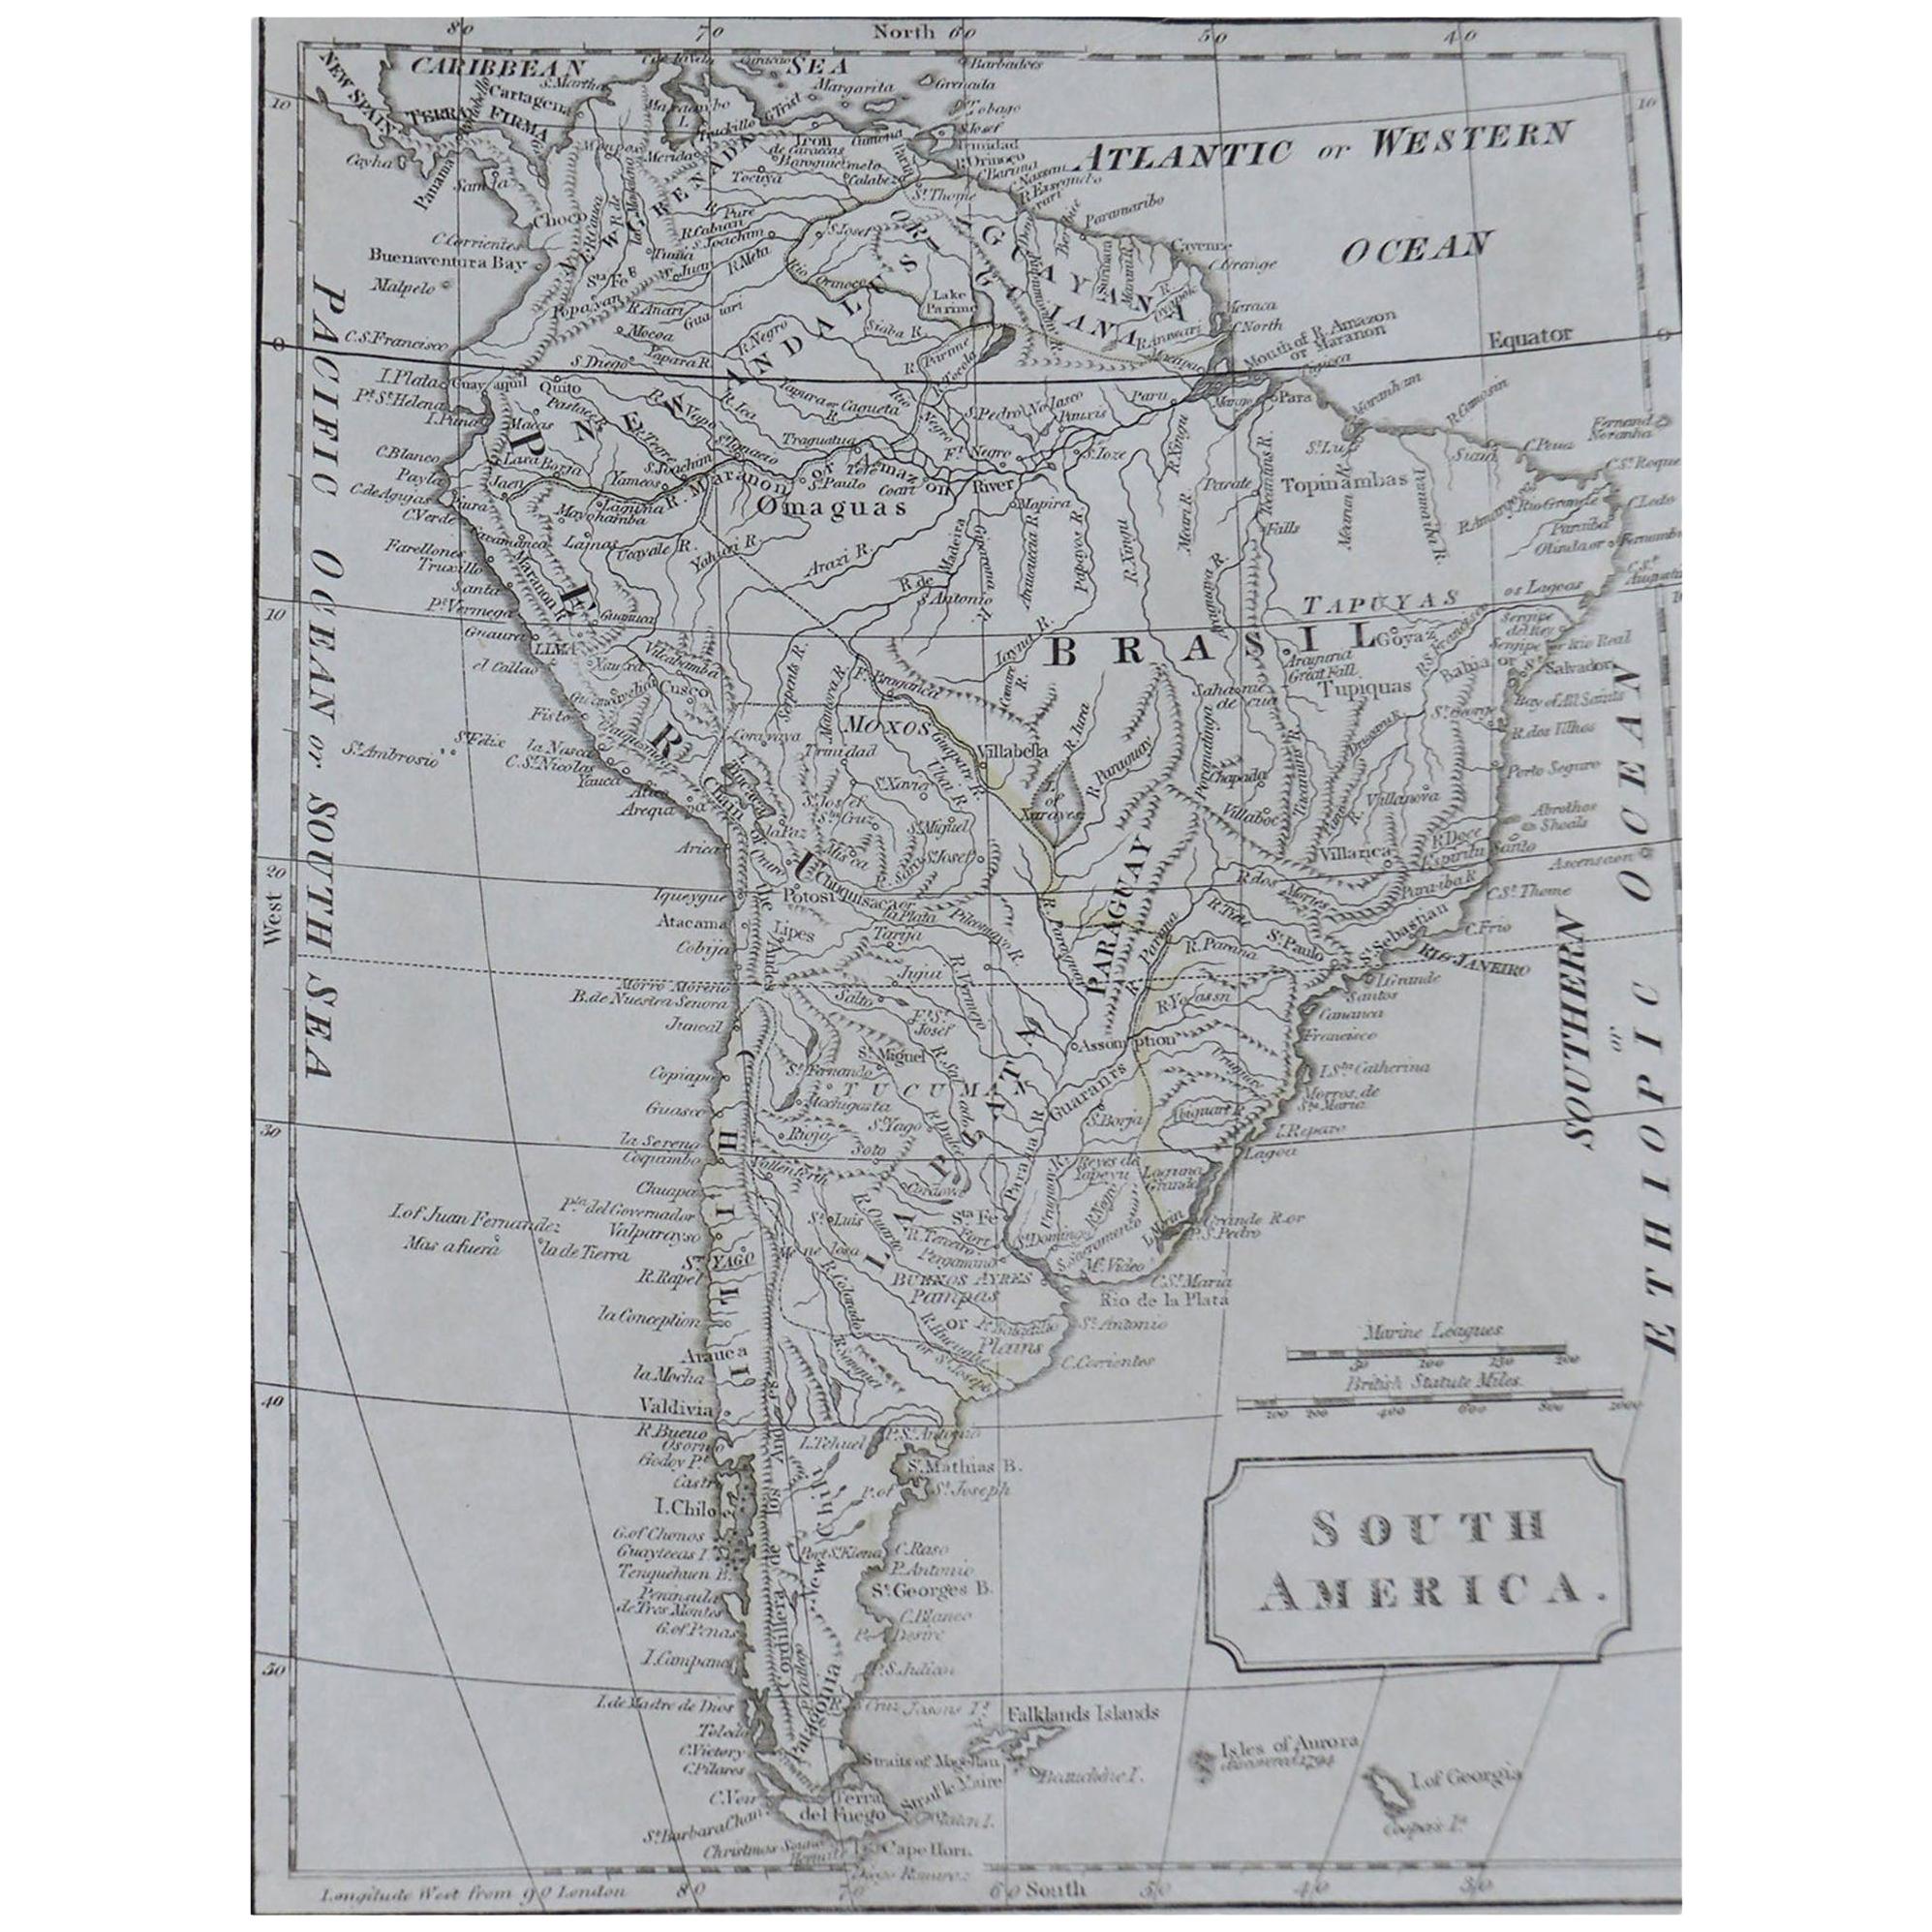 Original Antique Map of South America, circa 1830